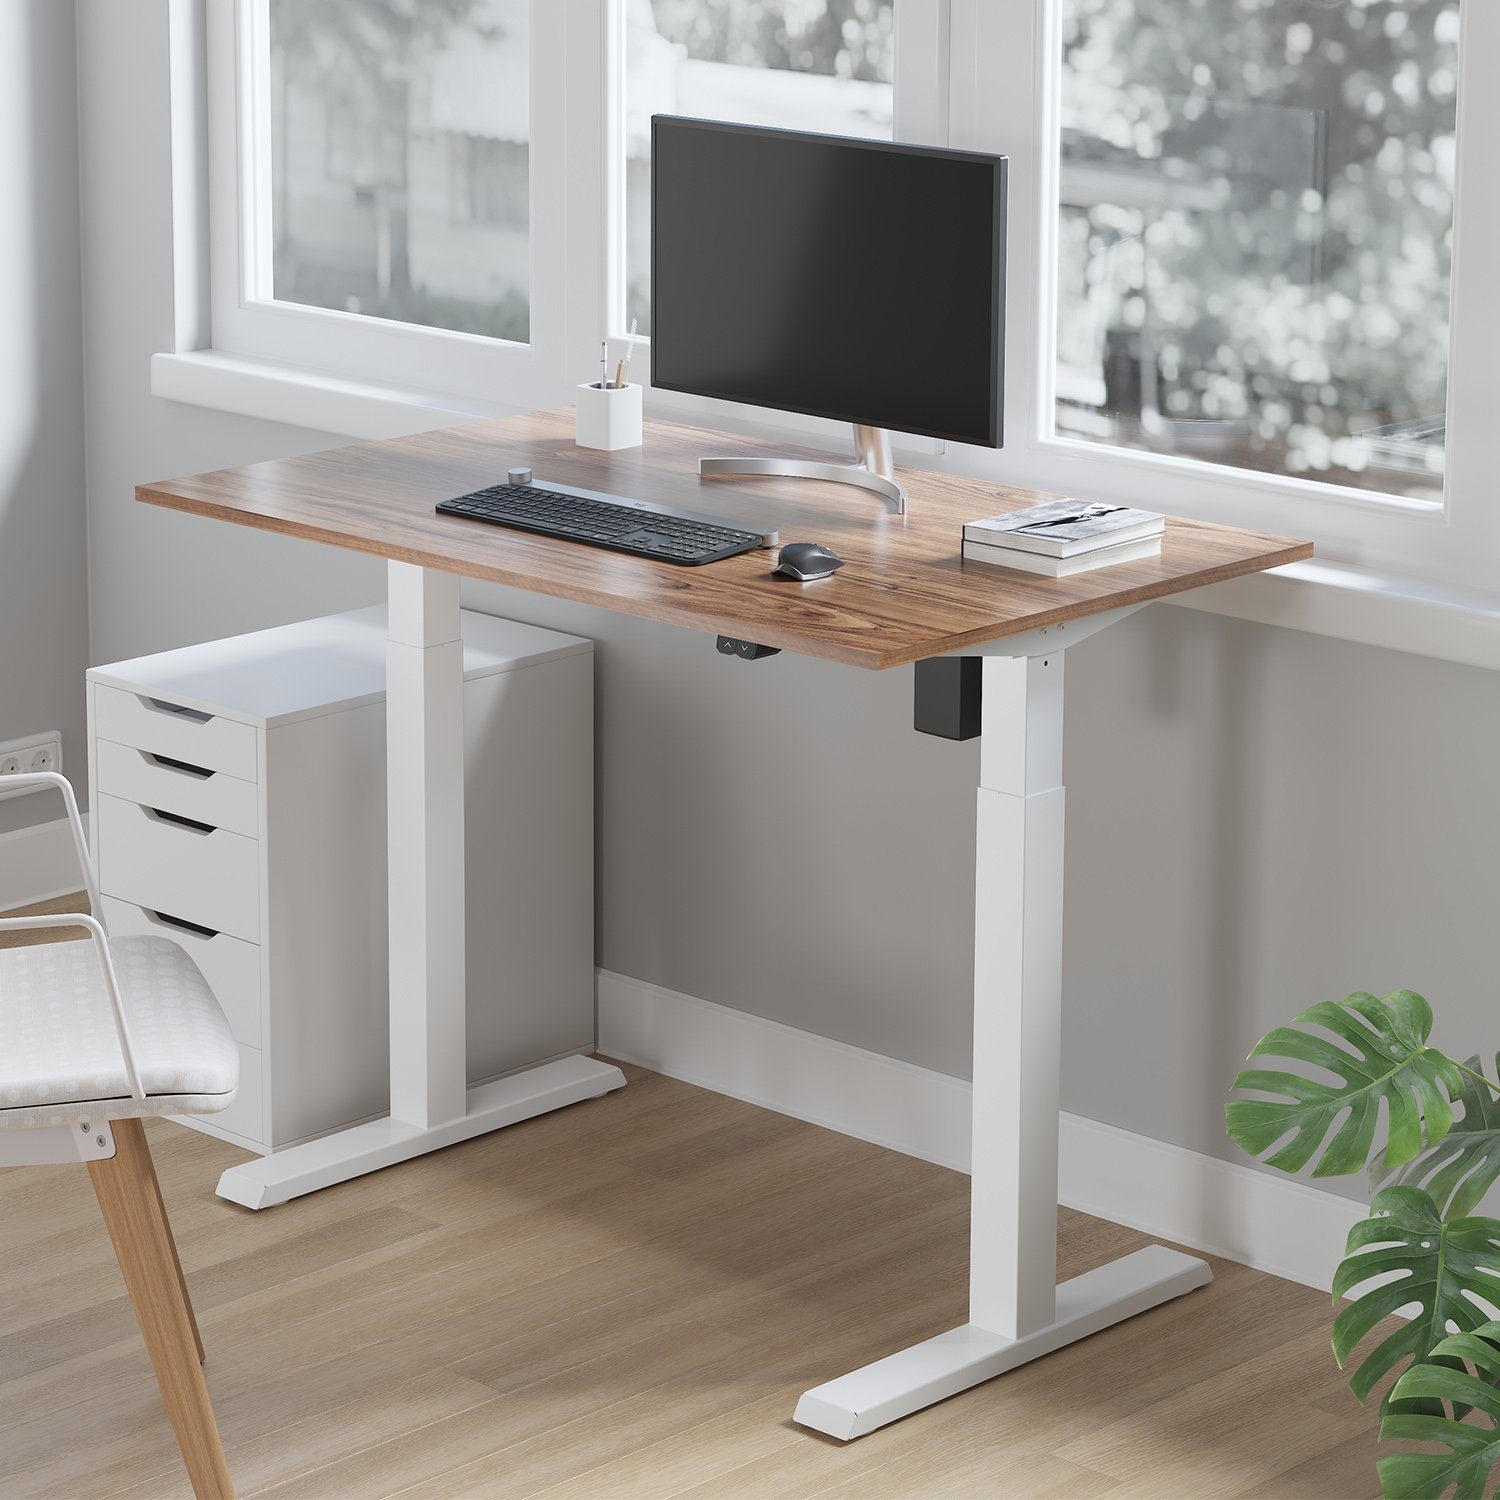 Maclean Schreibtisch Tischgestell Sitz-Steh-Schreibtisch ER-403, Weiß/Schwarz/Grau